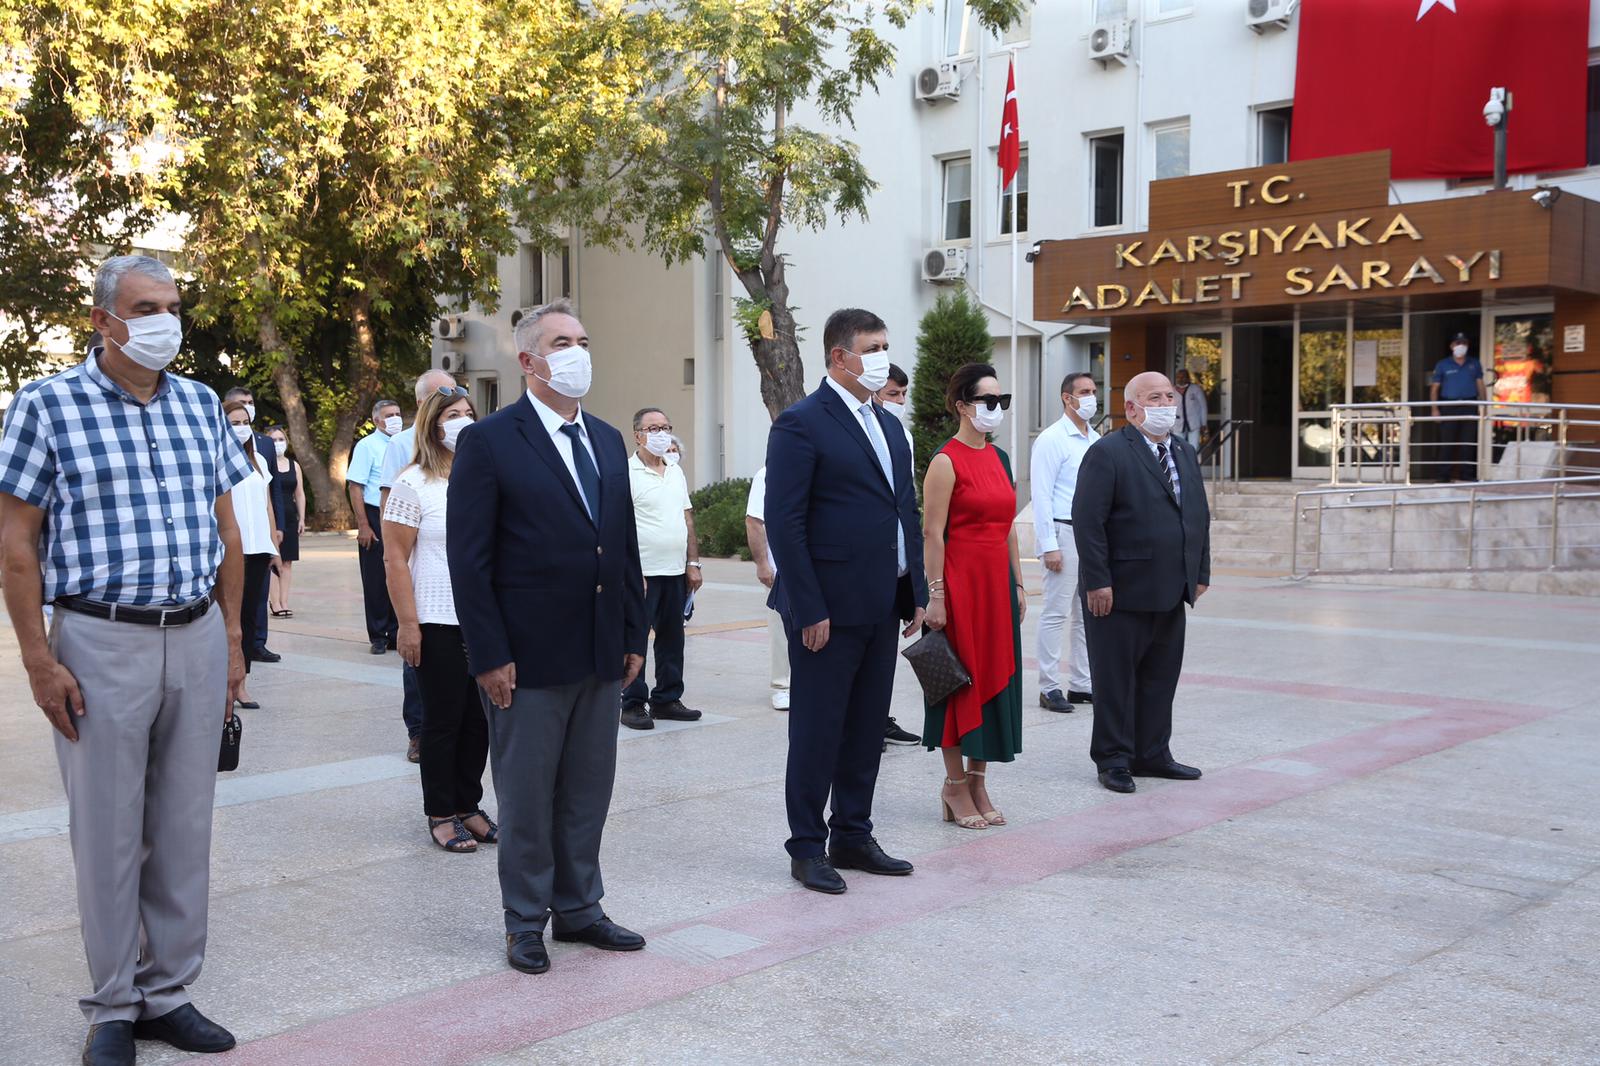 9eylül Karşıyaka Belediye Başkanı Dr. Cemil Tugay, İzmir’in kurtuluşunun 98 yıl dönümü dolayısıyla Karşıyaka Kaymakamlığı önündeki Atatürk Anıtı’na çelenk bıraktı. Pandemi tedbirleri altında düzenlenen törene CHP İlçe Başkanı Murat Serdar Koç ve partililer, Belediye Meclisi üyeleri ile muhtarlar da katıldı. Saygı duruşunun ardından
Karşıyaka Belediye Bandosu eşliğinde İstiklal Marşı’nı okuyan katılımcılar, başta Ulu Önder Gazi Mustafa Kemal Atatürk olmak üzere, tüm milli mücadele kahramanlarını saygı ve minnetle andı. Başkan Cemil Tugay ve eşi Öznur Tugay, törenin ardından İzmir Büyükşehir Belediyesi tarafından düzenlenen Zafer Yürüyüşü’ne katıldı. SONSUZ BAĞLILIKLA…
“9 Eylül onurumuzdur” diyen Başkan Tugay, konuşmasında şunları kaydetti: “9 Eylül İzmir’in kurtuluşunun 98 yılını, yaşadığımız salgın koşullarında gereğince kutlayamasak da, onurla ve gururla yaşıyoruz. Bize bu büyük mirası bırakan atalarımızı, başta Büyük Önderimiz ve Başöğretmenimiz Gazi Mustafa Kemal Atatürk olmak üzere; saygıyla,
minnetle ve sonsuz bağlılıkla anıyoruz. “Atatürk’ün Karşıyaka’sı” olarak, bir kere daha söz veriyoruz ki, bu büyük destanı yaratan ruhtan, bilinçten ve çağdaş, demokrat, laik Türkiye Cumhuriyeti değerlerinden asla vaz geçmeyeceğiz, Bu değerlerin simge kenti Karşıyaka ve Karşıyakalılık duruşumuzdan asla ödün vermeyeceğiz. “Yurtta Barış, Dünyada Barış” ilkesiyle yeryüzüne esin ve cesaret vererek, İzmir’in dağlarında açan çiçeklere Karşıyaka rüzgârımızı ekleyeceğiz. Bilimden, akıldan, hukuktan, sanattan ve aydınlanmadan yana tavrımıza gölge düşürmeyeceğiz. Unutmayacak, unutturmayacağız. 9 Eylül onurumuz, bu duruş düne saygımız geleceğe sorumluluğumuz olarak bize daima ışık tutacak, yol gösterecek. İşte 98 yılda biz bir kere daha söz veriyoruz ki, daha yaşanır bir dünya, daha güzel bir Türkiye mümkündür ve biz bu uğurda çalışırken, asla yorulmayacağız. Nice yıllara İzmir, nice güzel yolculuklara sevgili ülkemiz, yaşasın Gazi Mustafa Kemal Atatürk’ümüz!”